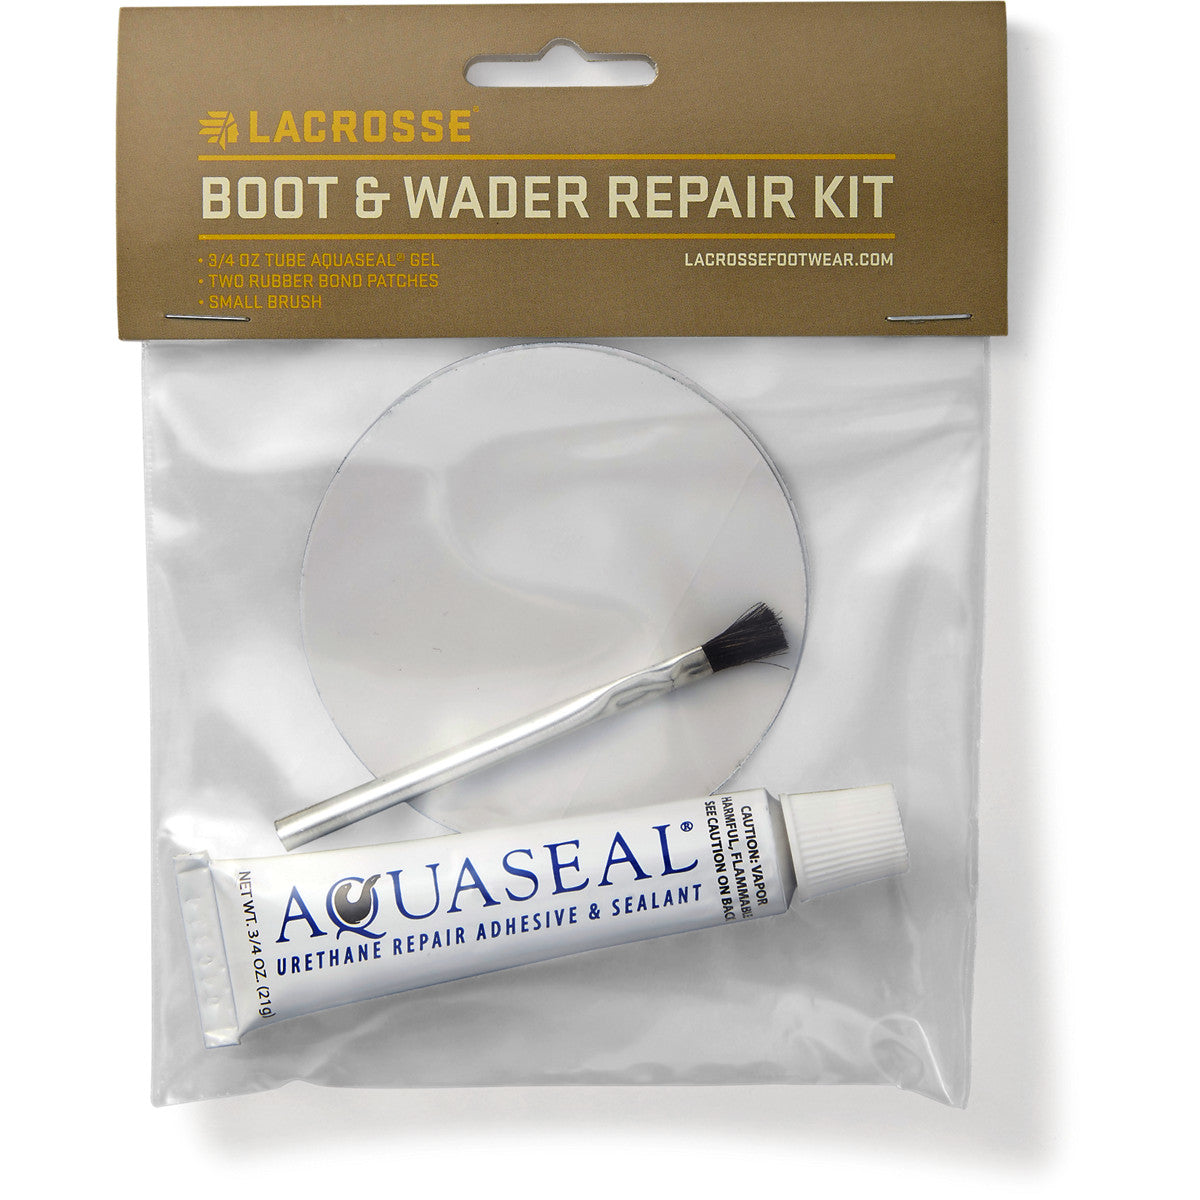 Boot & Wader Repair Kit